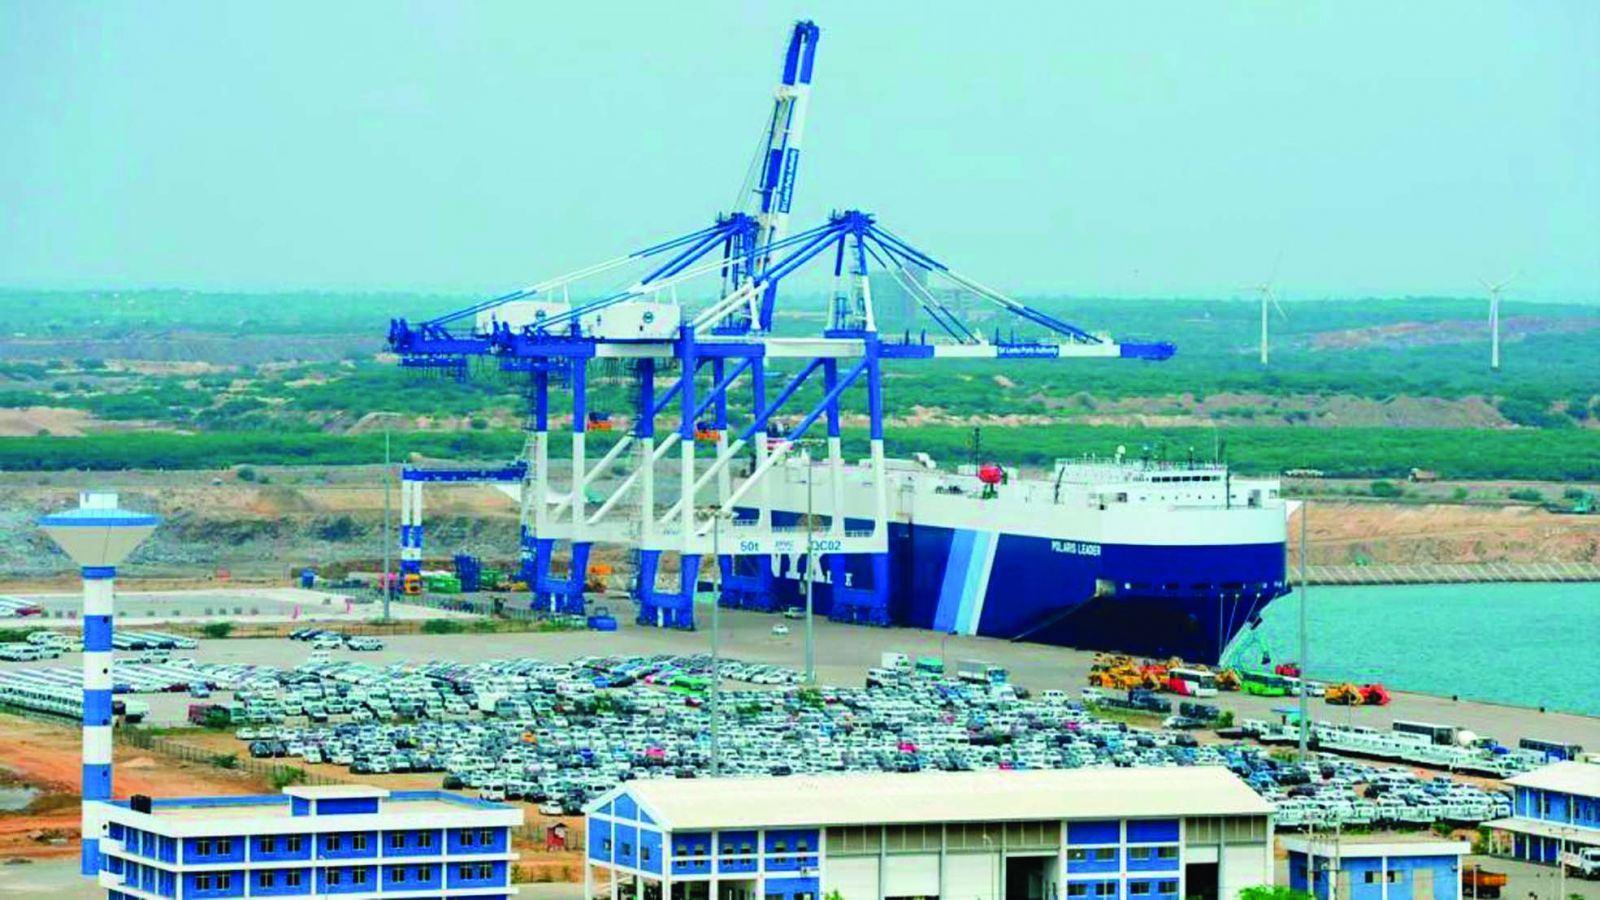  Sri Lanka đã bán 70% cổ phần cảng Hambantota cho tập đoàn China Merchants Port Holdings (Trung Quốc) để thanh toán khoản nợ 6 tỷ USD từng vay của Trung Quốc qua sáng kiến BRI. 